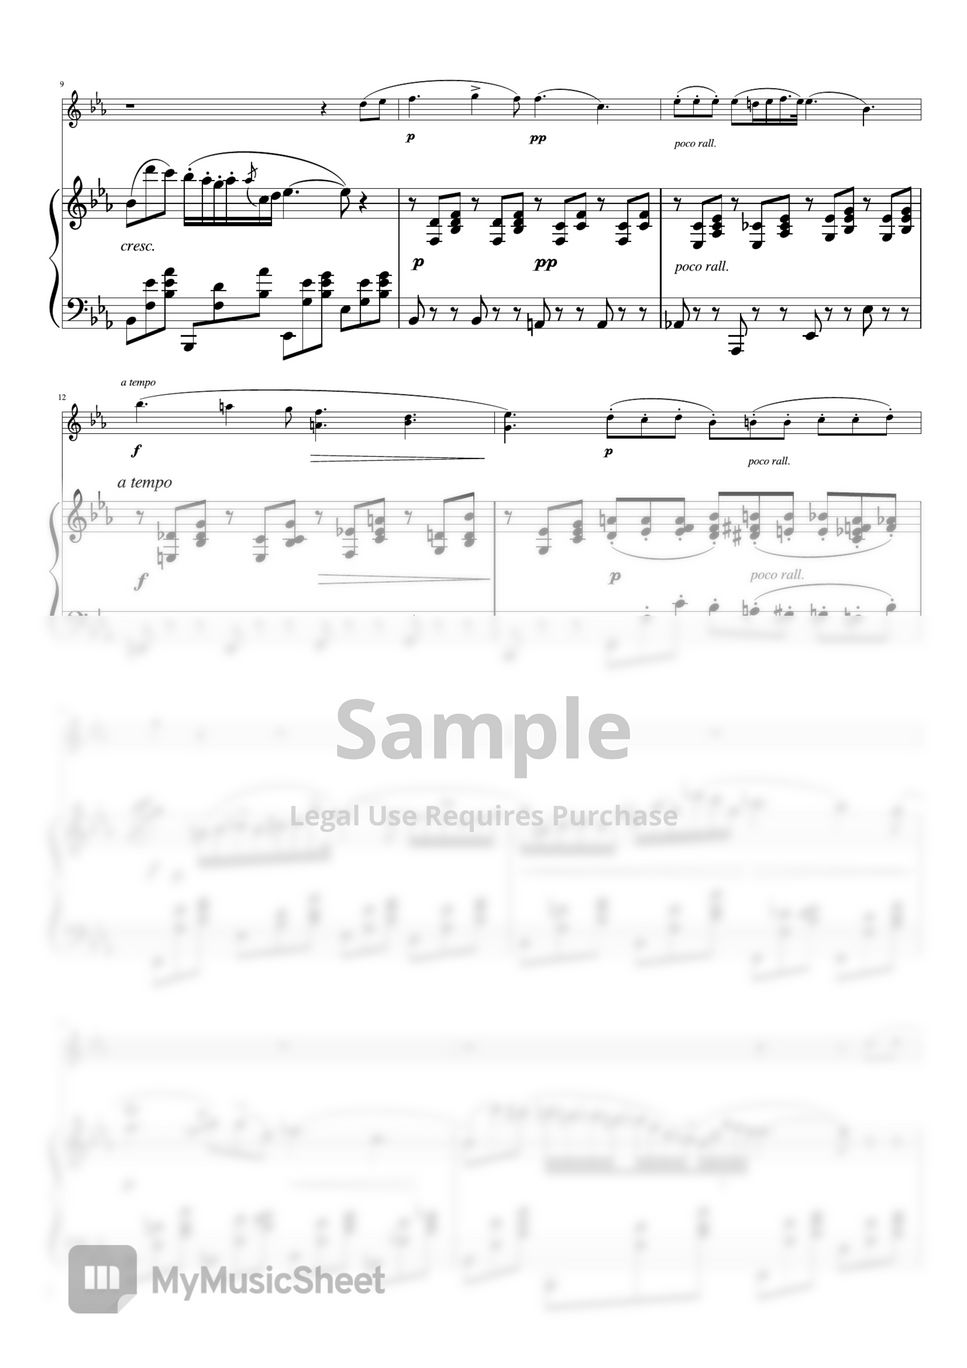 chopin - Nocturne op.9-2 (violin piano) by pfkaori